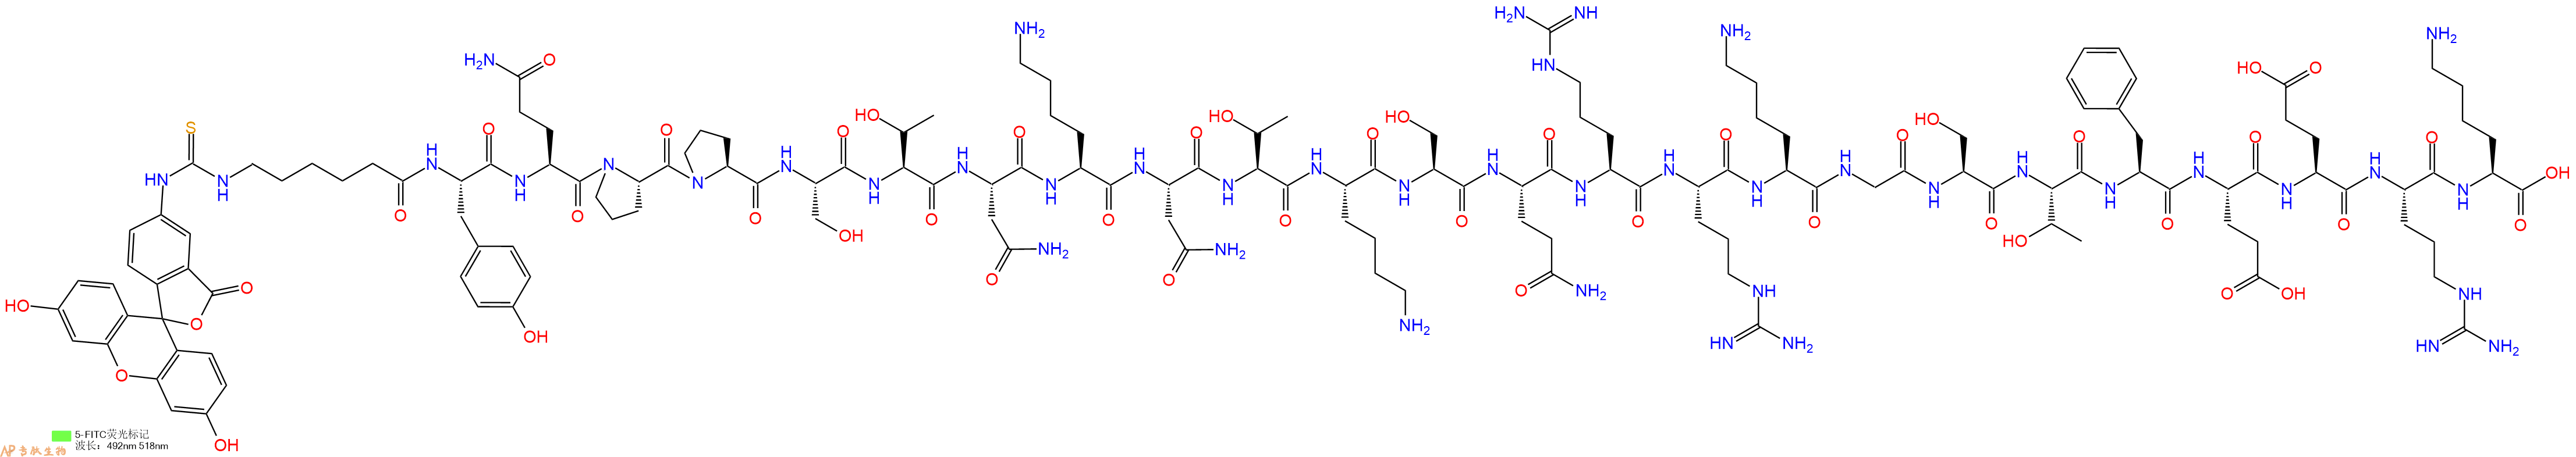 专肽生物产品5FITC-Ahx-Tyr-Gln-Pro-Pro-Ser-Thr-Asn-Lys-Asn-Thr-